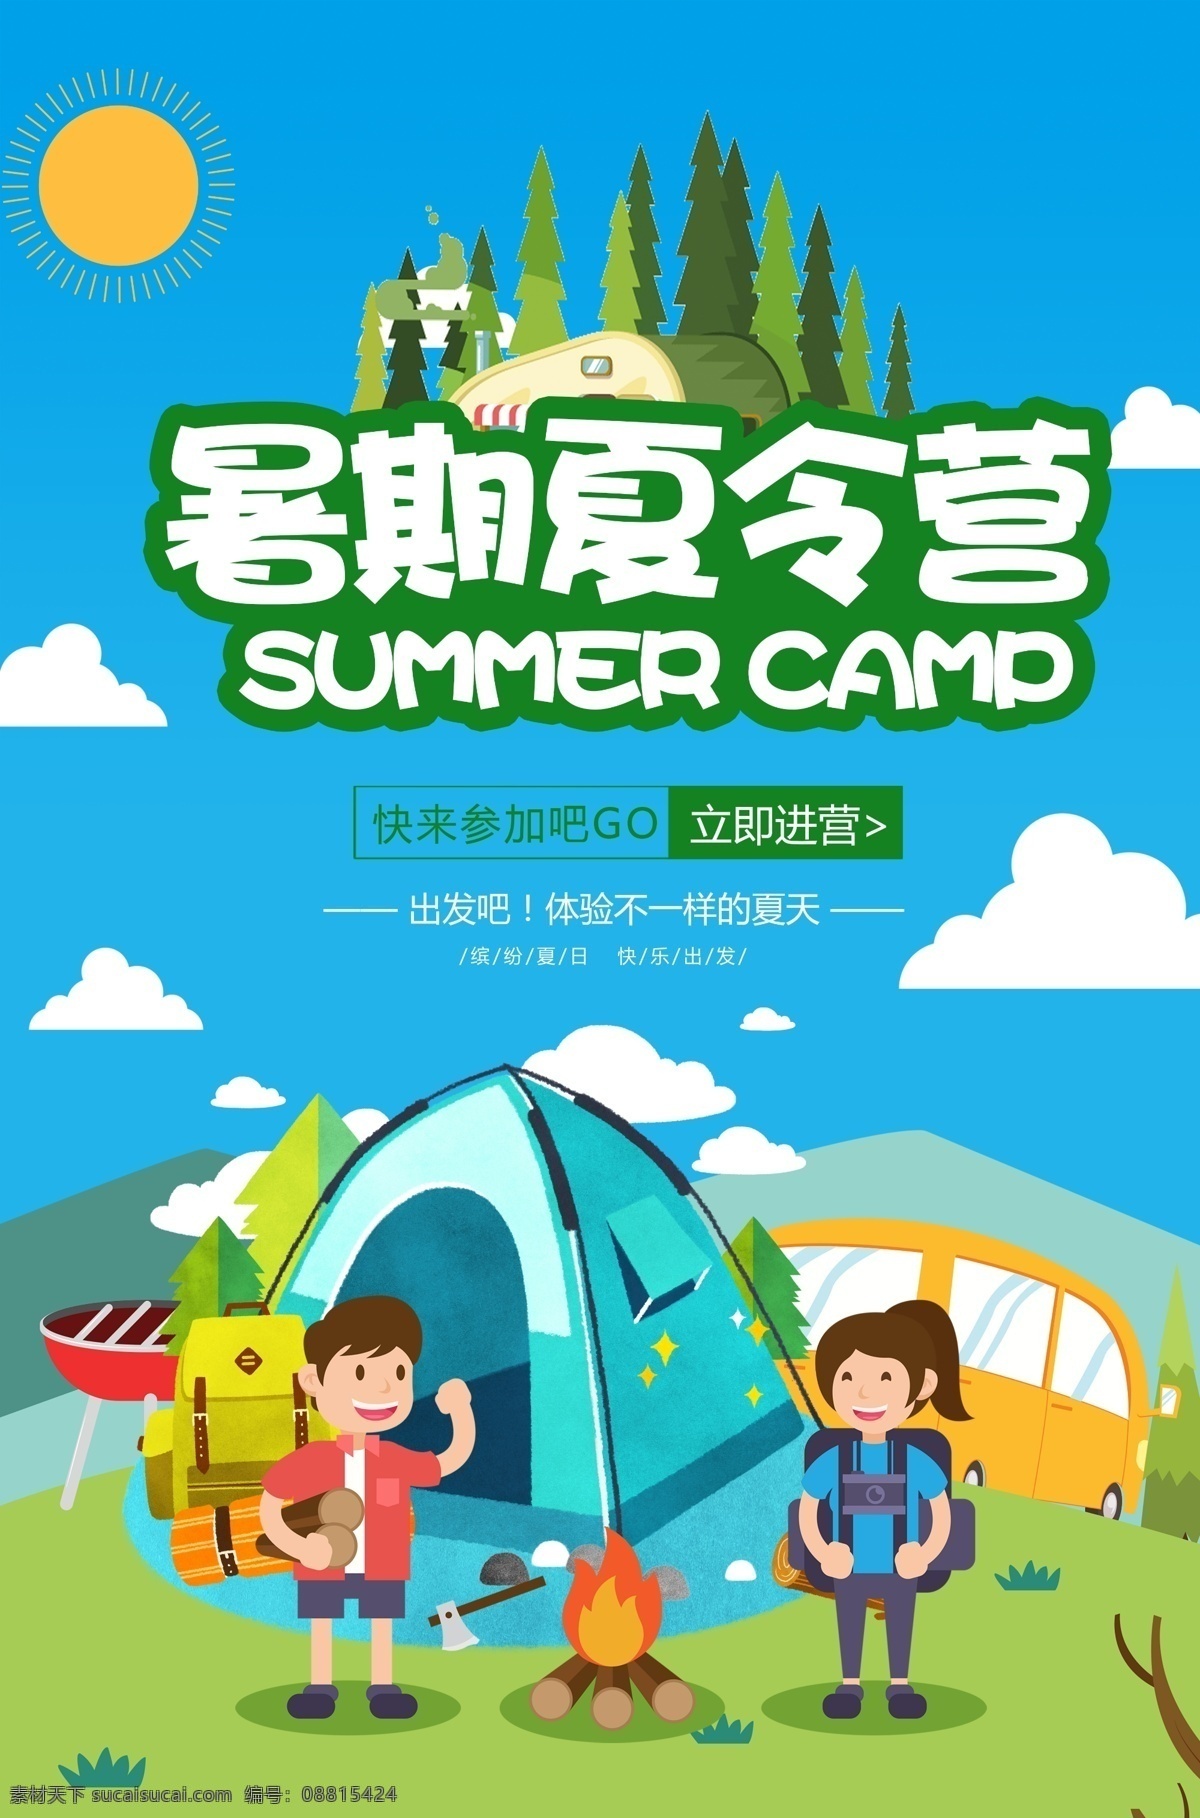 暑期 夏令营 海报 暑期夏令营 夏季活动 夏令营招生 招生 旅行